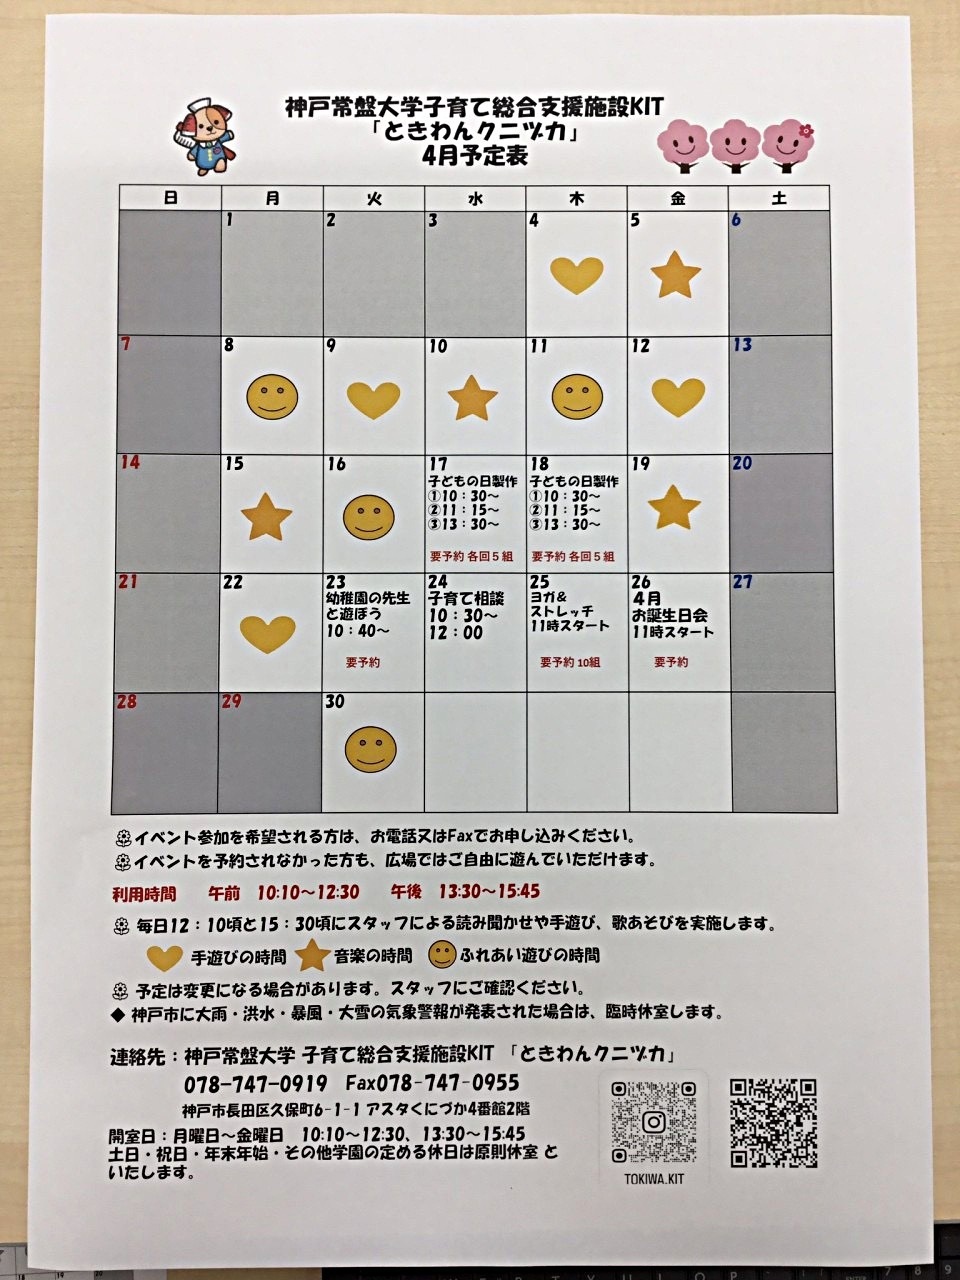 Calendário de abril de Tokiwan Kunizuka